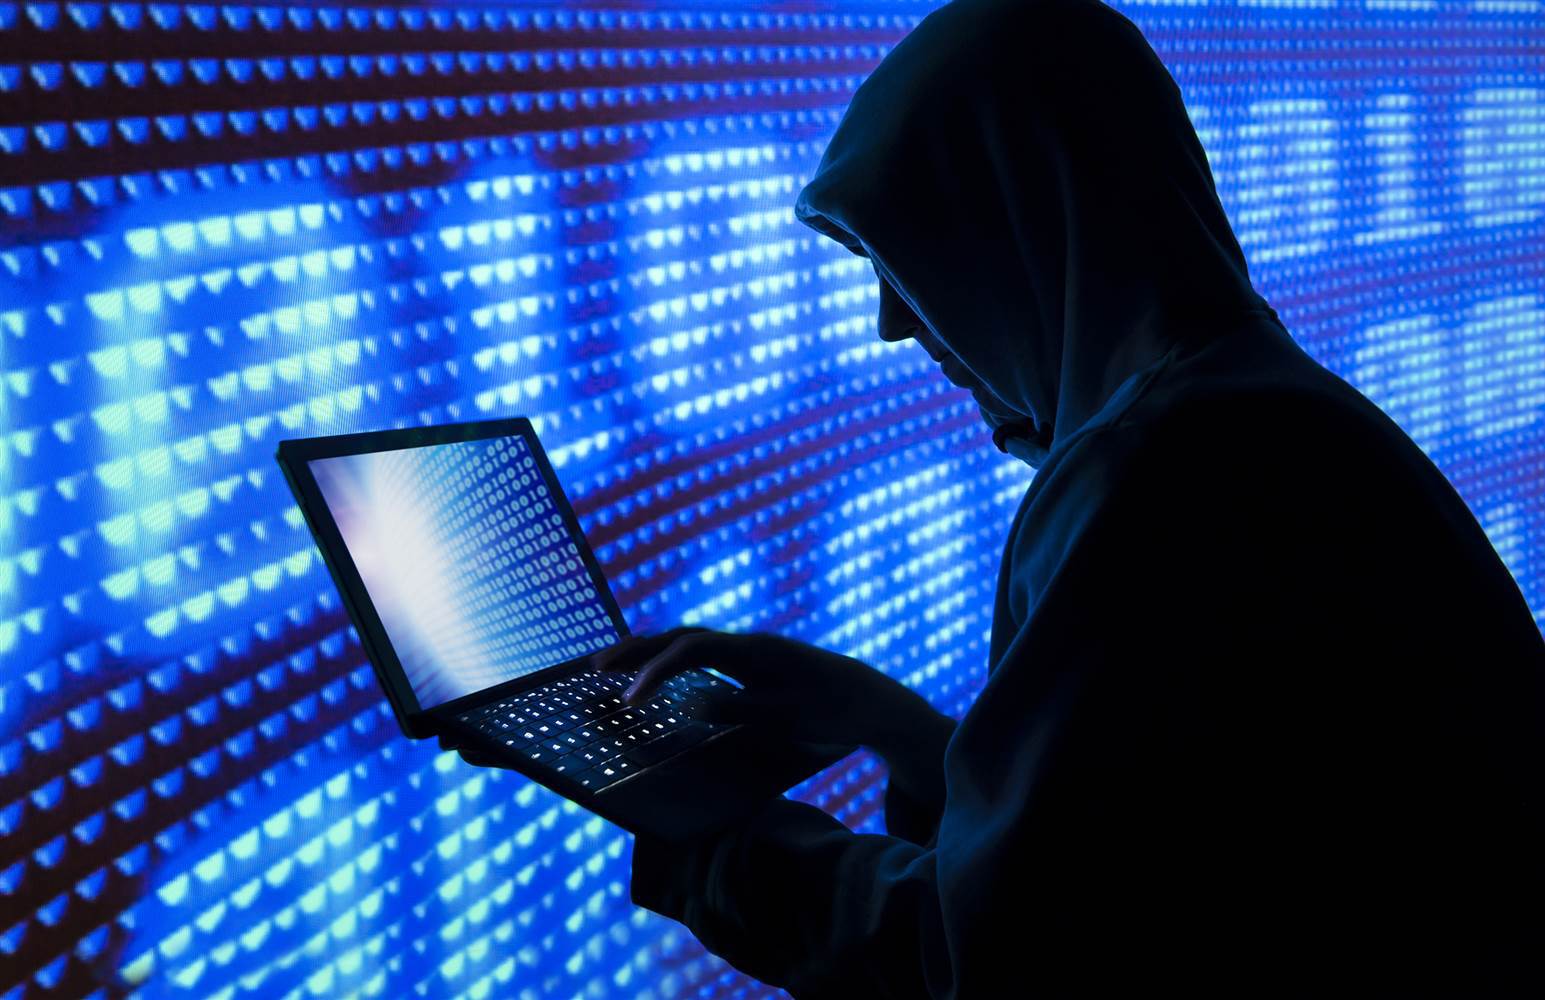 Specialiştii în securitate cibernetică avertizează companiile: Fraudele pe internet cresc în vremuri de criză. Numărul acestora îl va depăşi pe cel de după criza din 2008